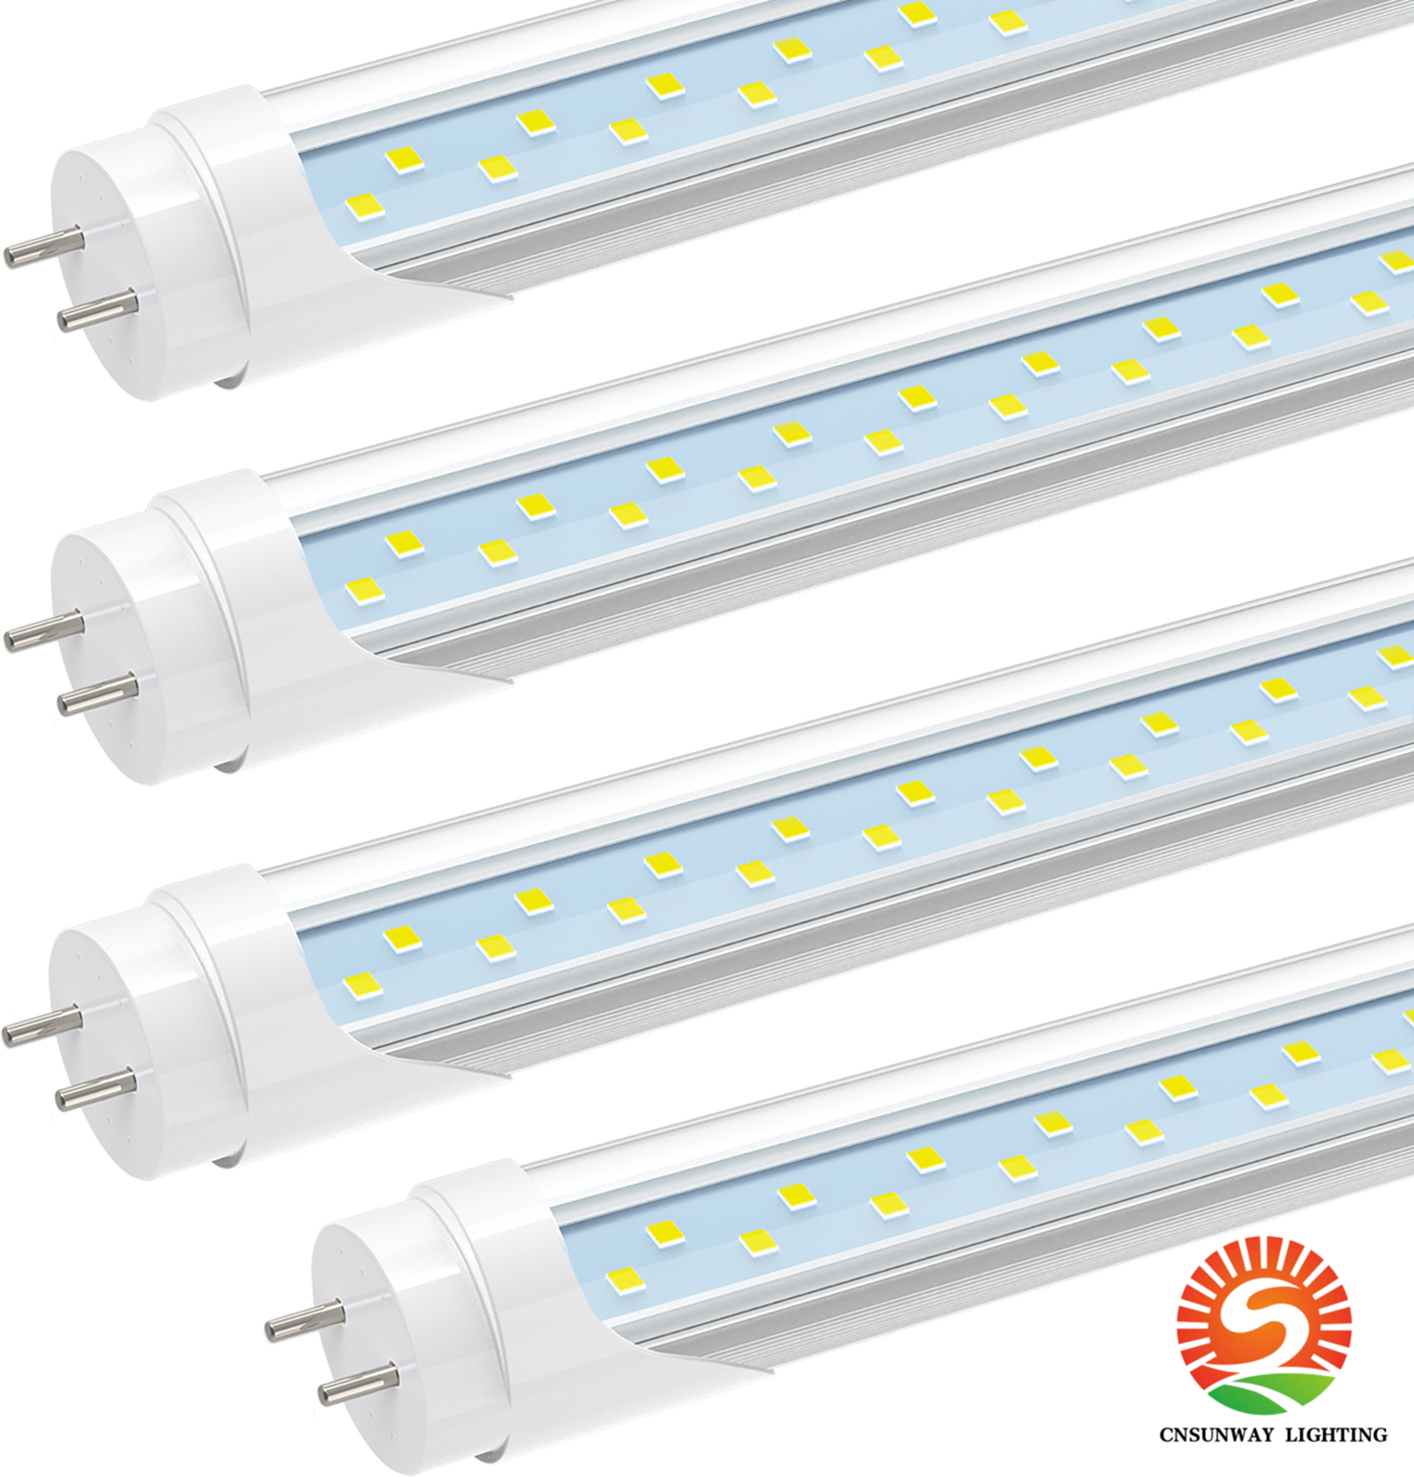 Żarówki LED LED, G13 Bi-Pint8 Flourescent 18W 6000K Cool White, 36-calowe zamienniki T10 T12, Usuń balast, podwójny zasilany, przezroczysty, 3 stóp światła sklepowe